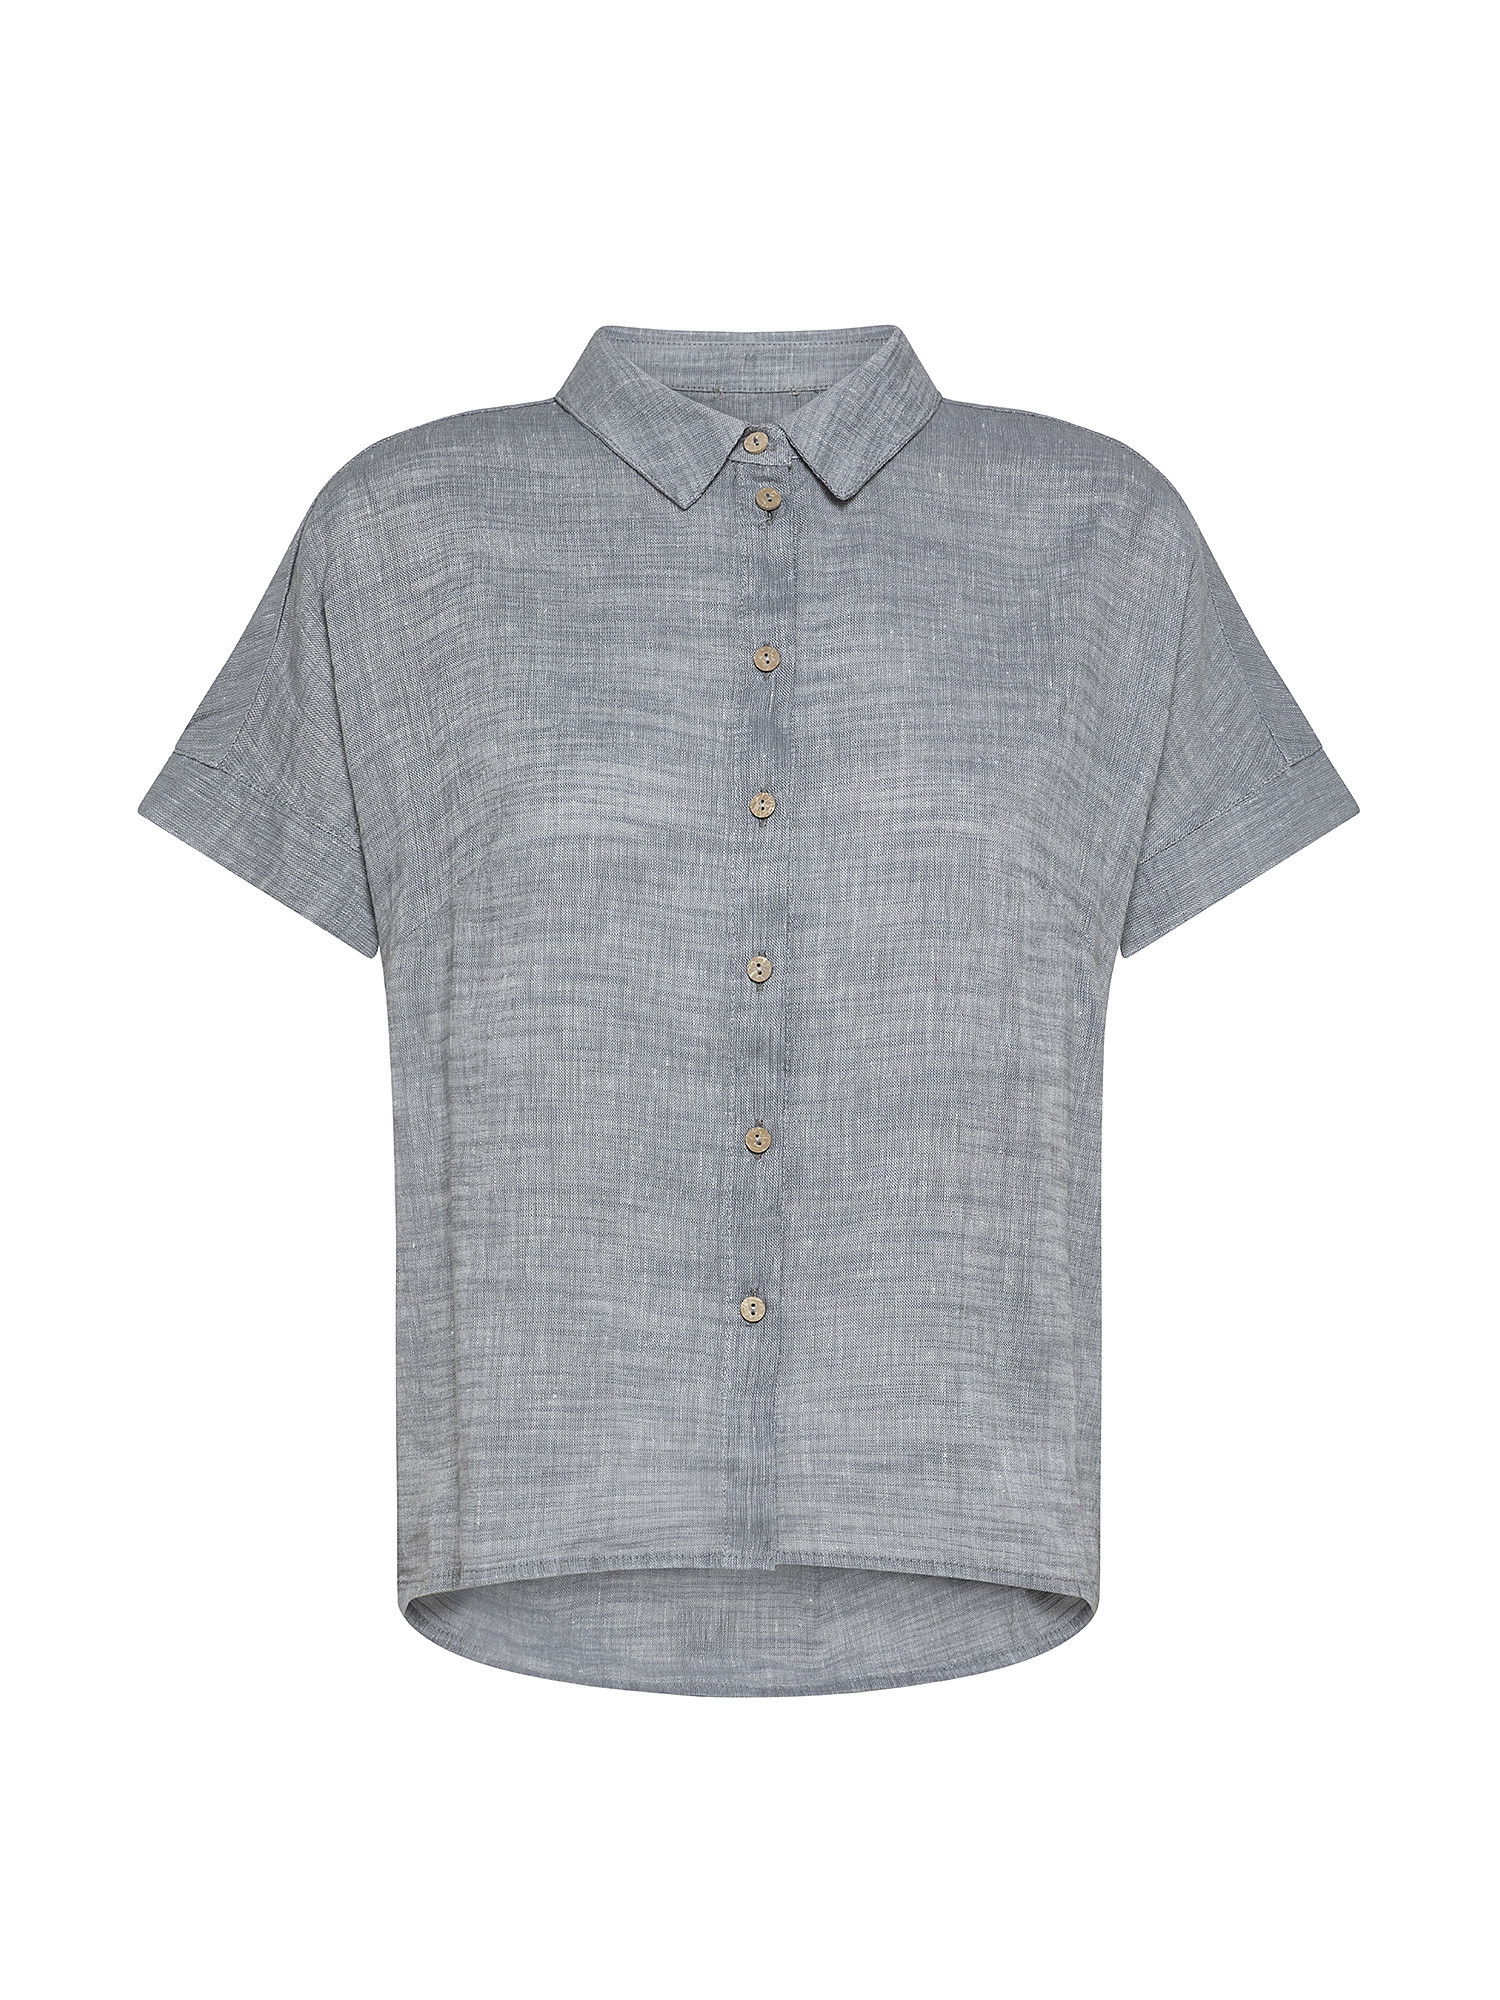 Shirt SL in linen blend, Light Grey, large image number 0